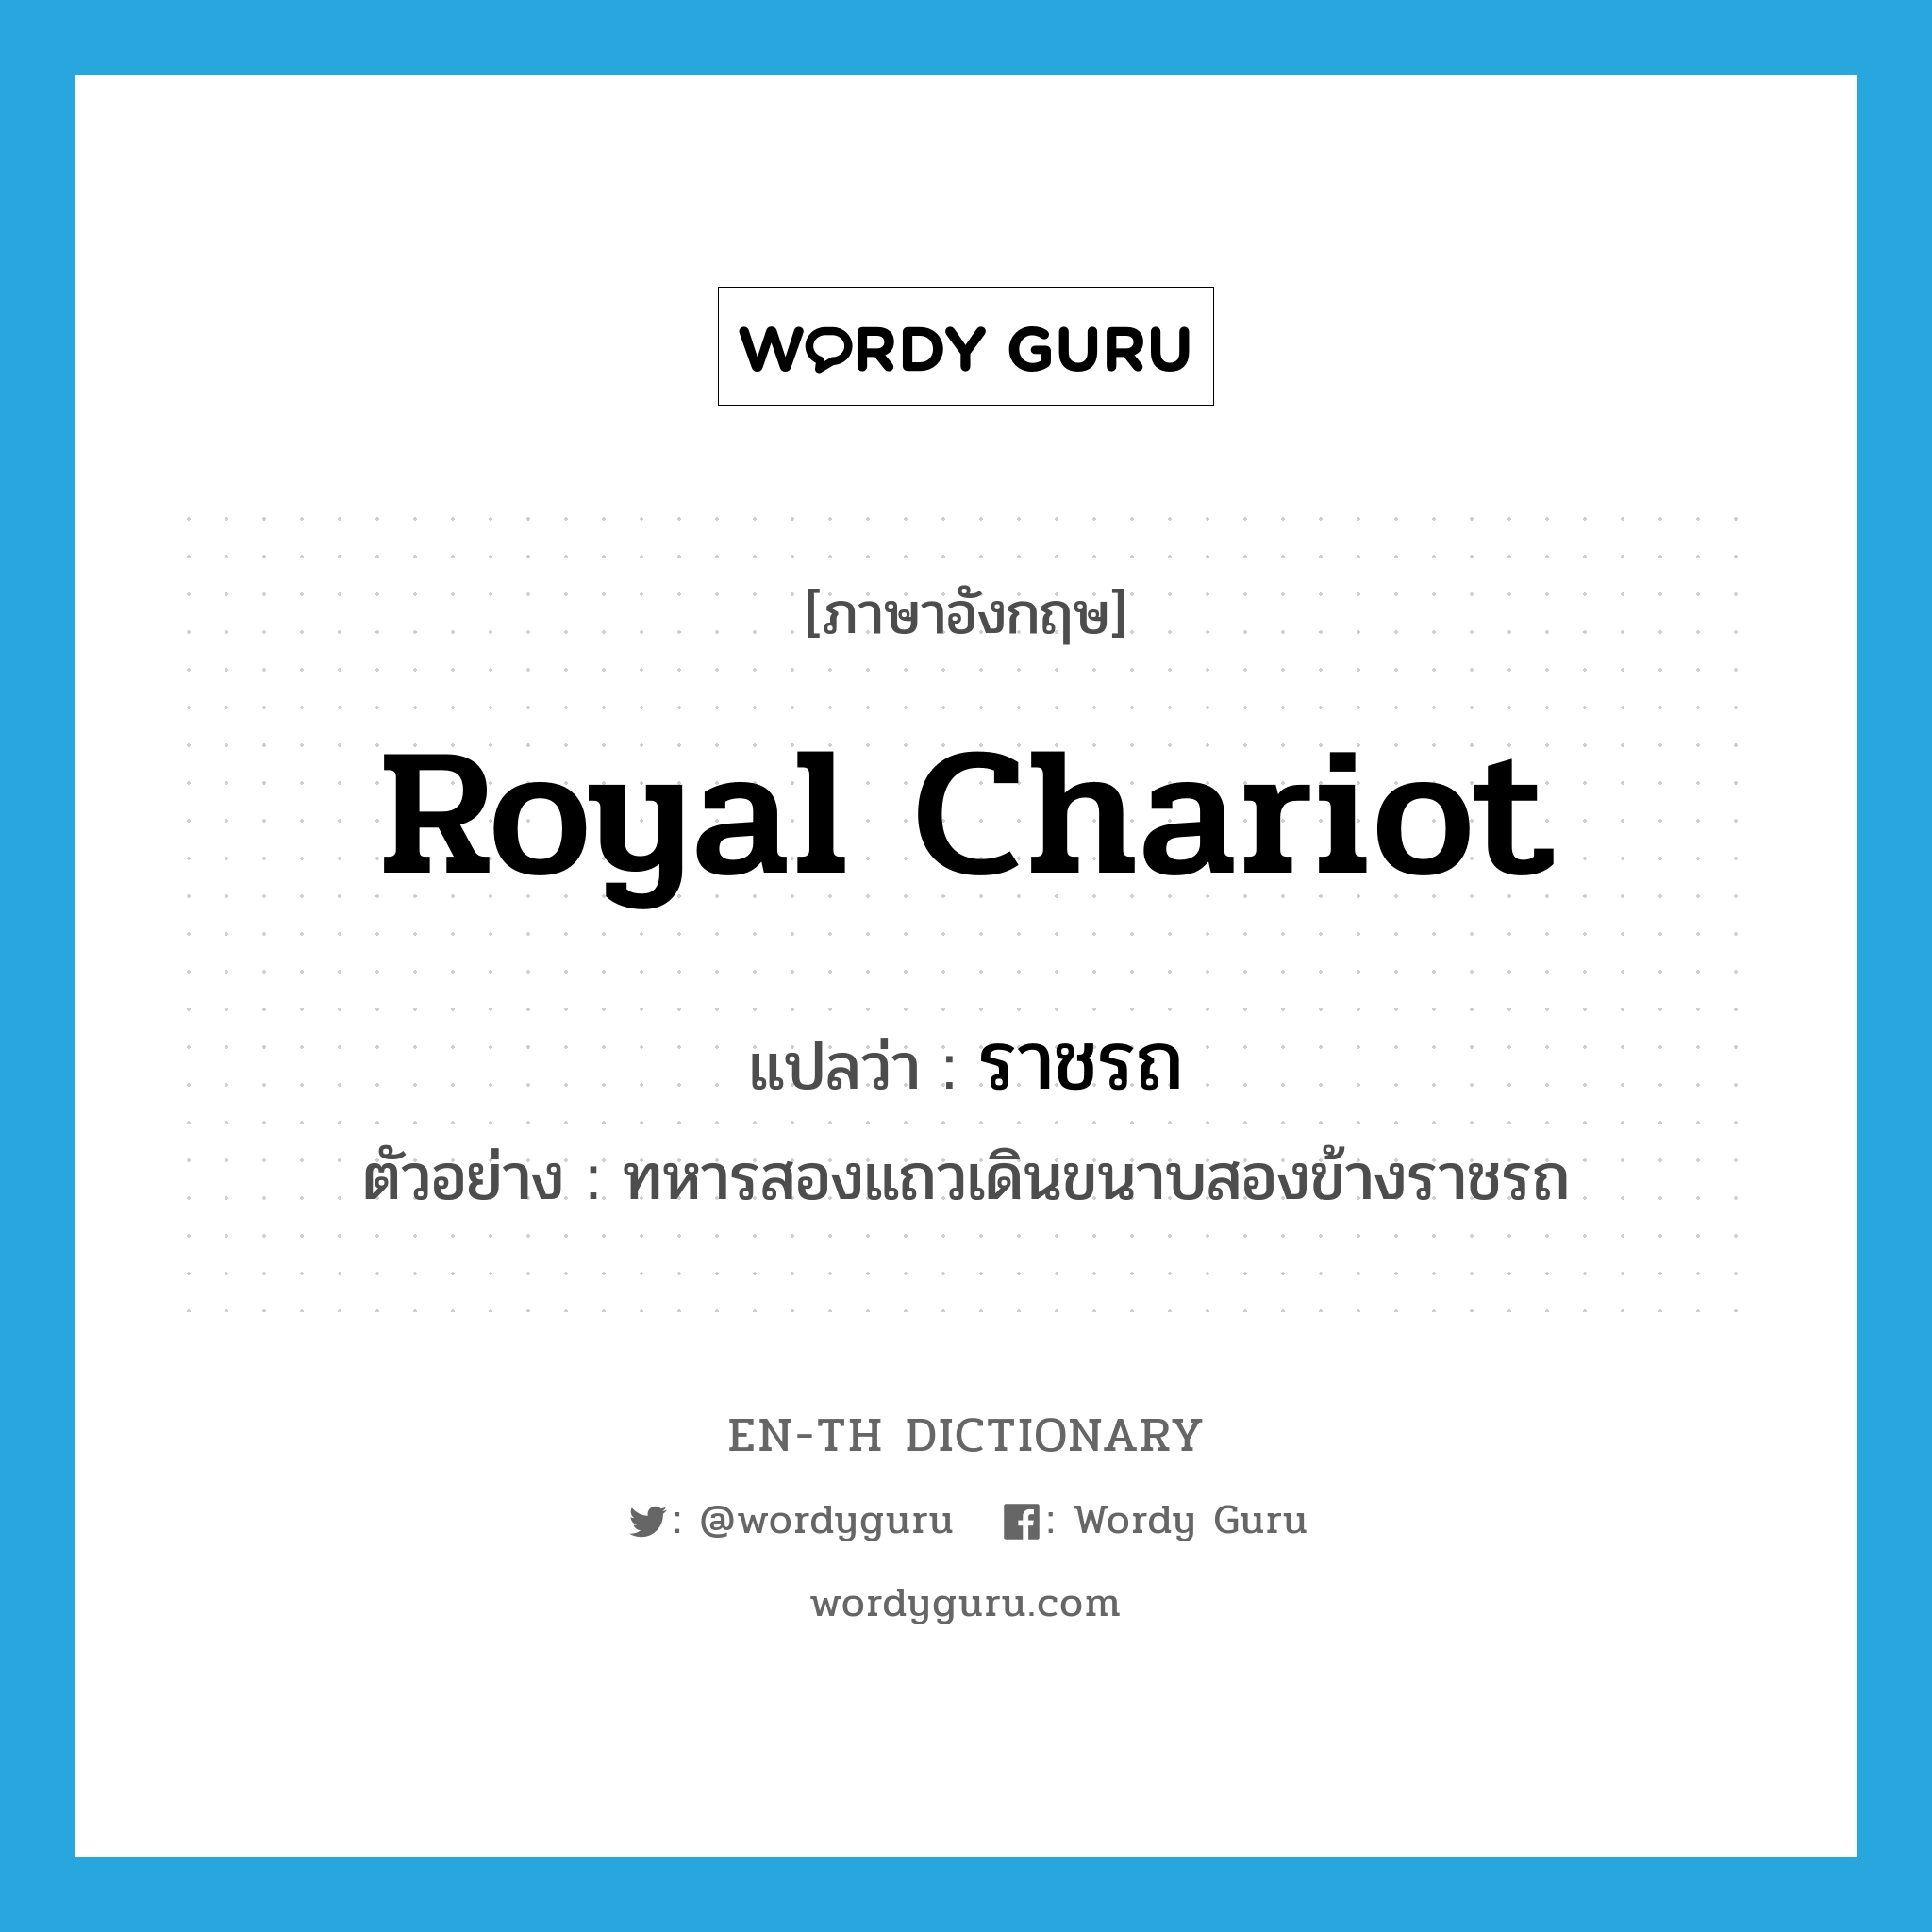 royal chariot แปลว่า?, คำศัพท์ภาษาอังกฤษ royal chariot แปลว่า ราชรถ ประเภท N ตัวอย่าง ทหารสองแถวเดินขนาบสองข้างราชรถ หมวด N